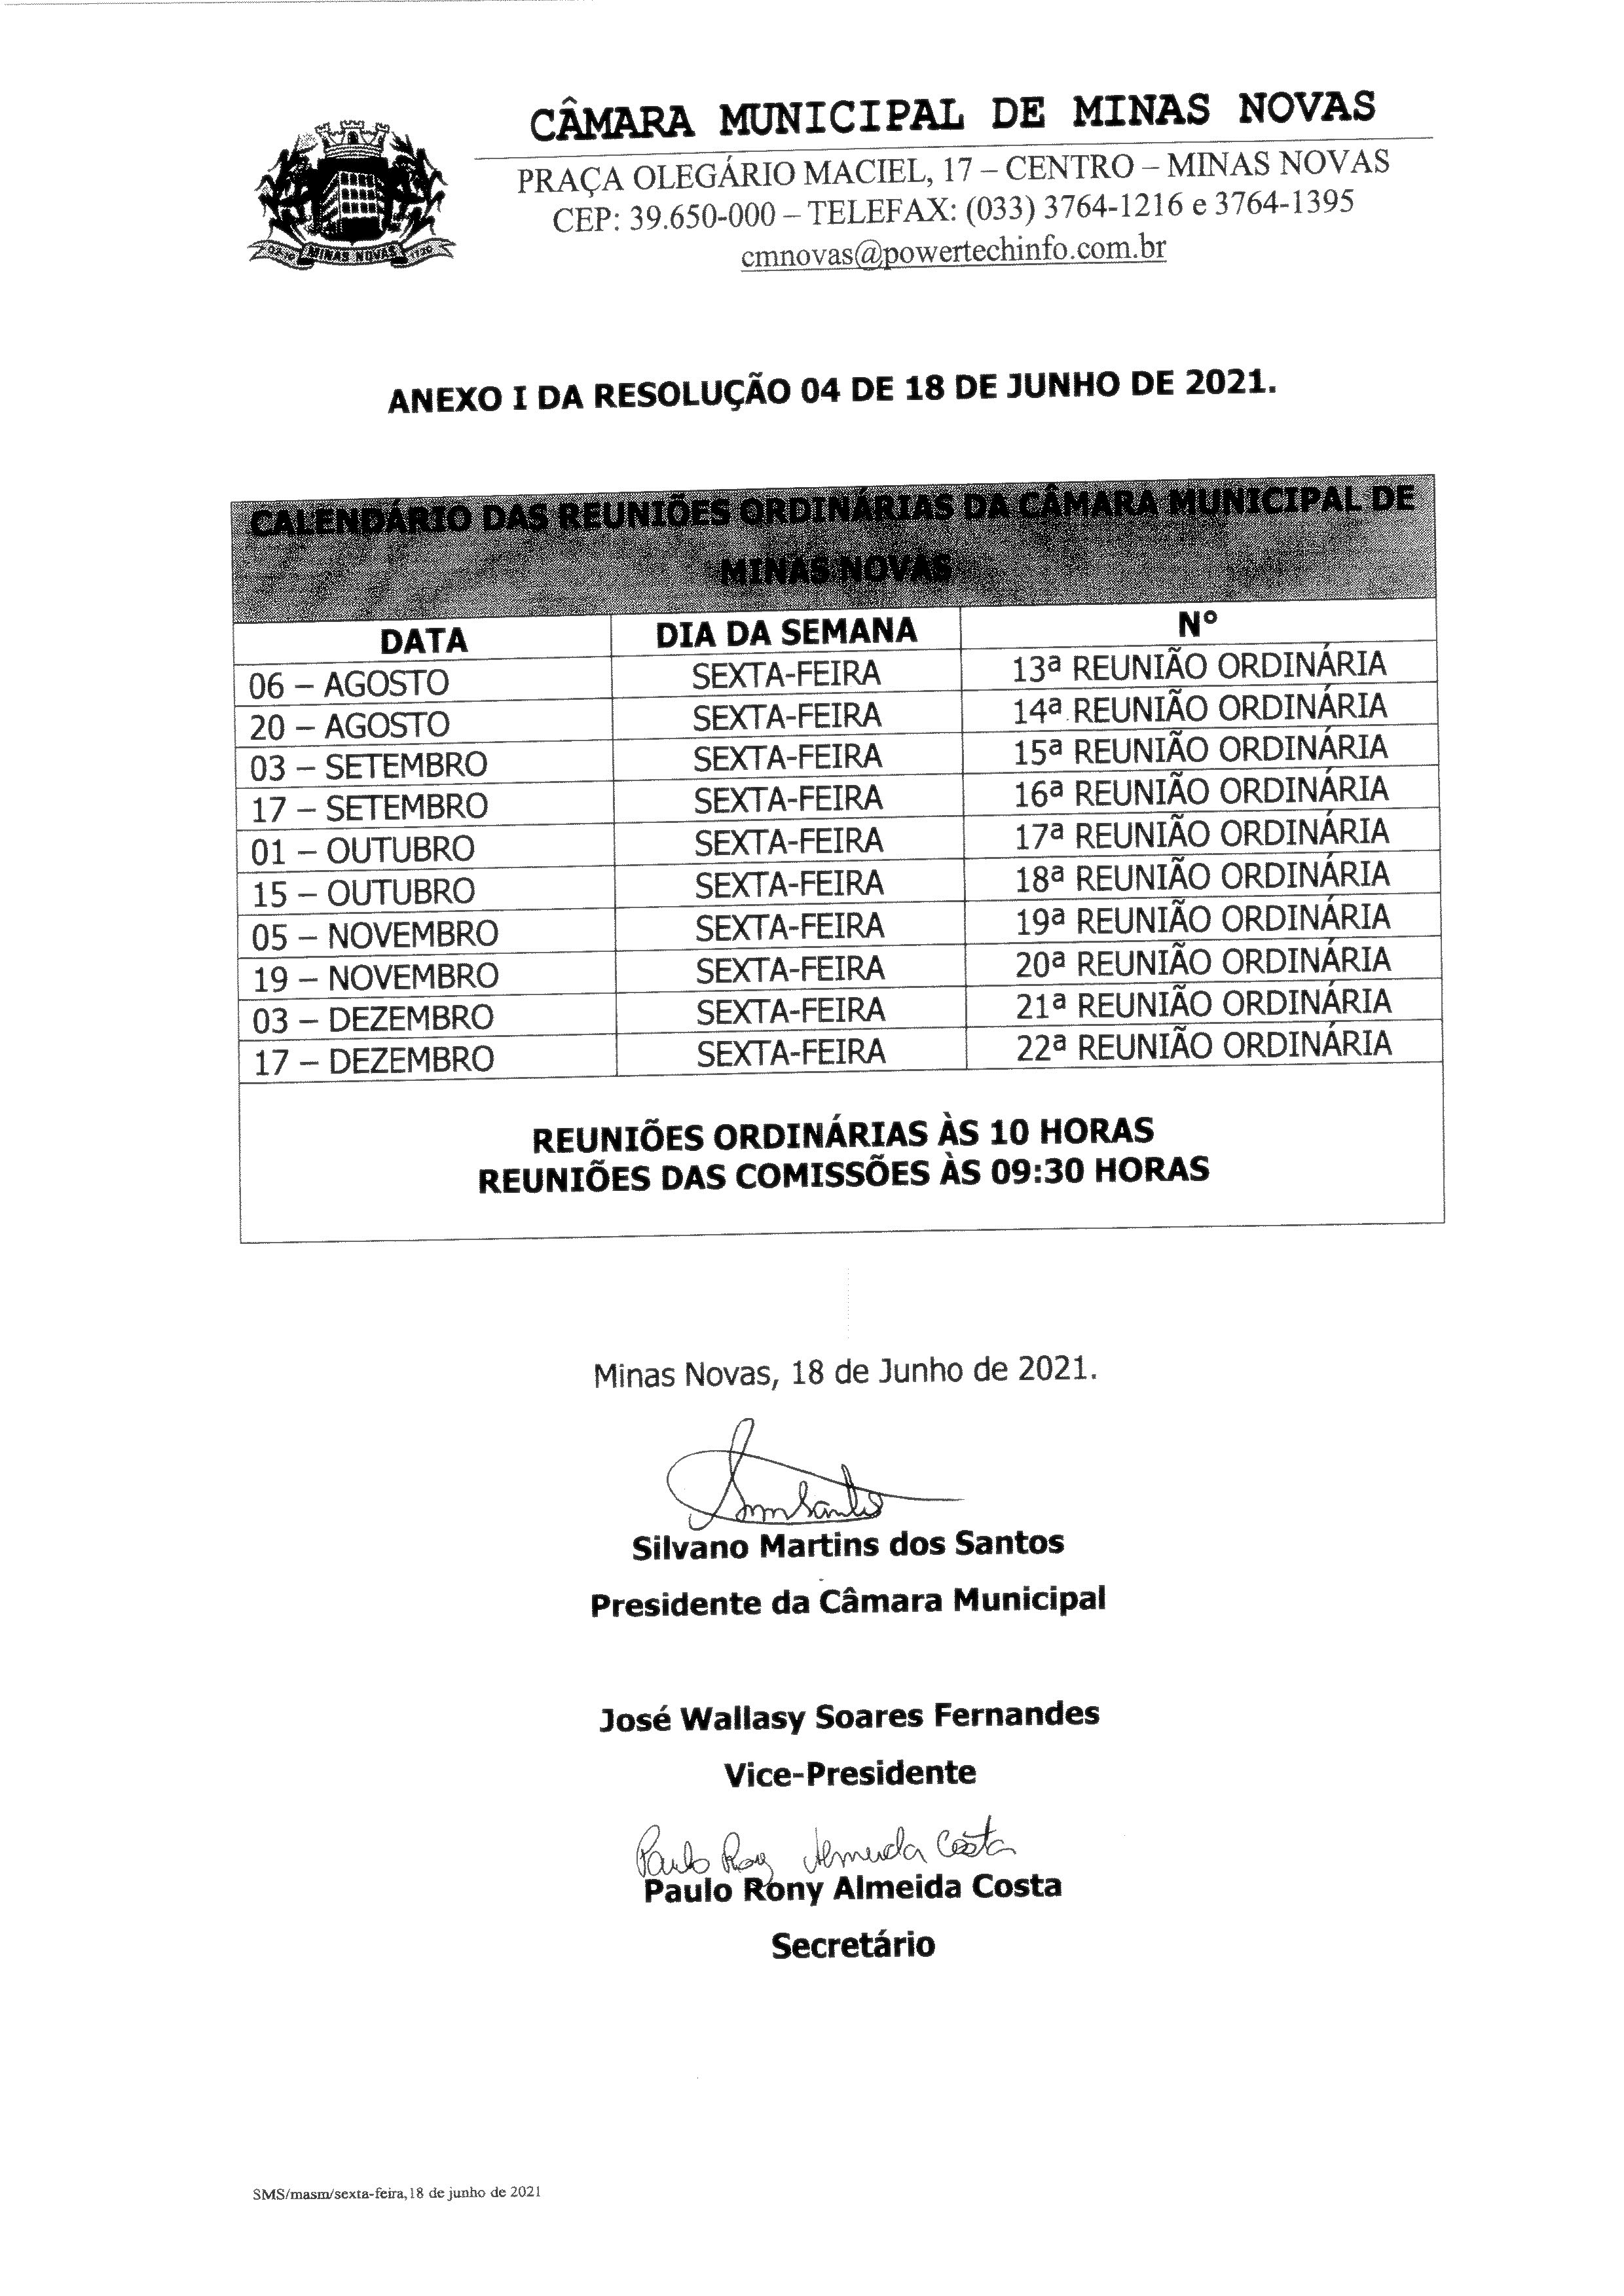 Calendário das Reuniões Ordinárias da Câmara Municipal de Minas Novas (Exercício de 2021) - 02º Semestre